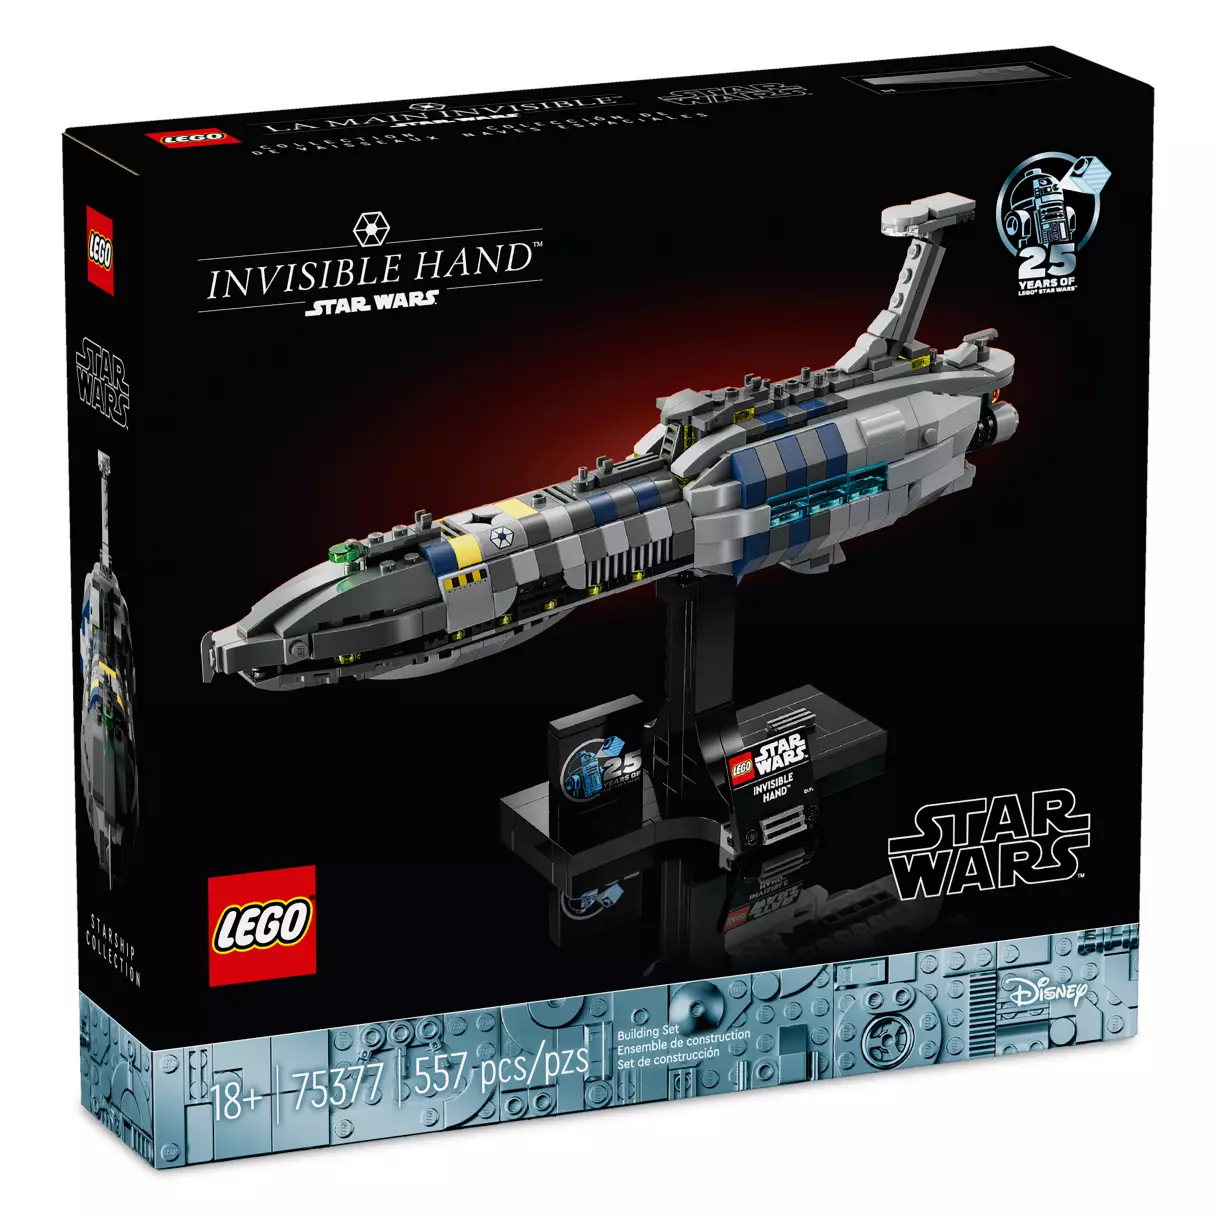 ROTS Invisible Hand Starship Lego Set 1